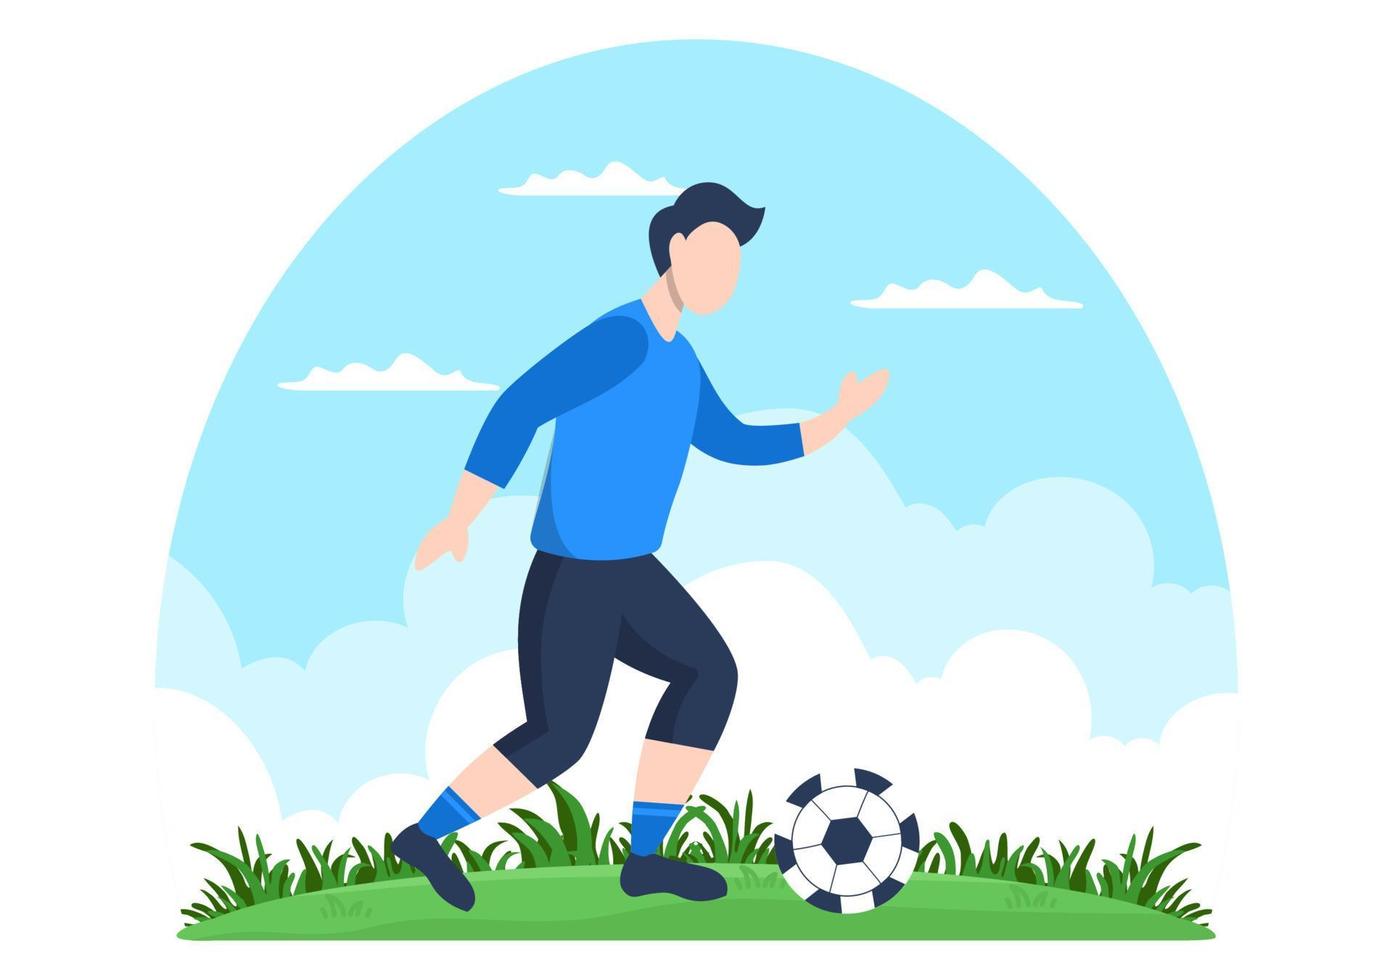 Fußball spielen mit Jungen Fußball spielen Sportuniform tragen verschiedene Bewegungen wie Treten, Halten, Verteidigen, Parieren und Angriff im Feld. Vektor-Illustration vektor